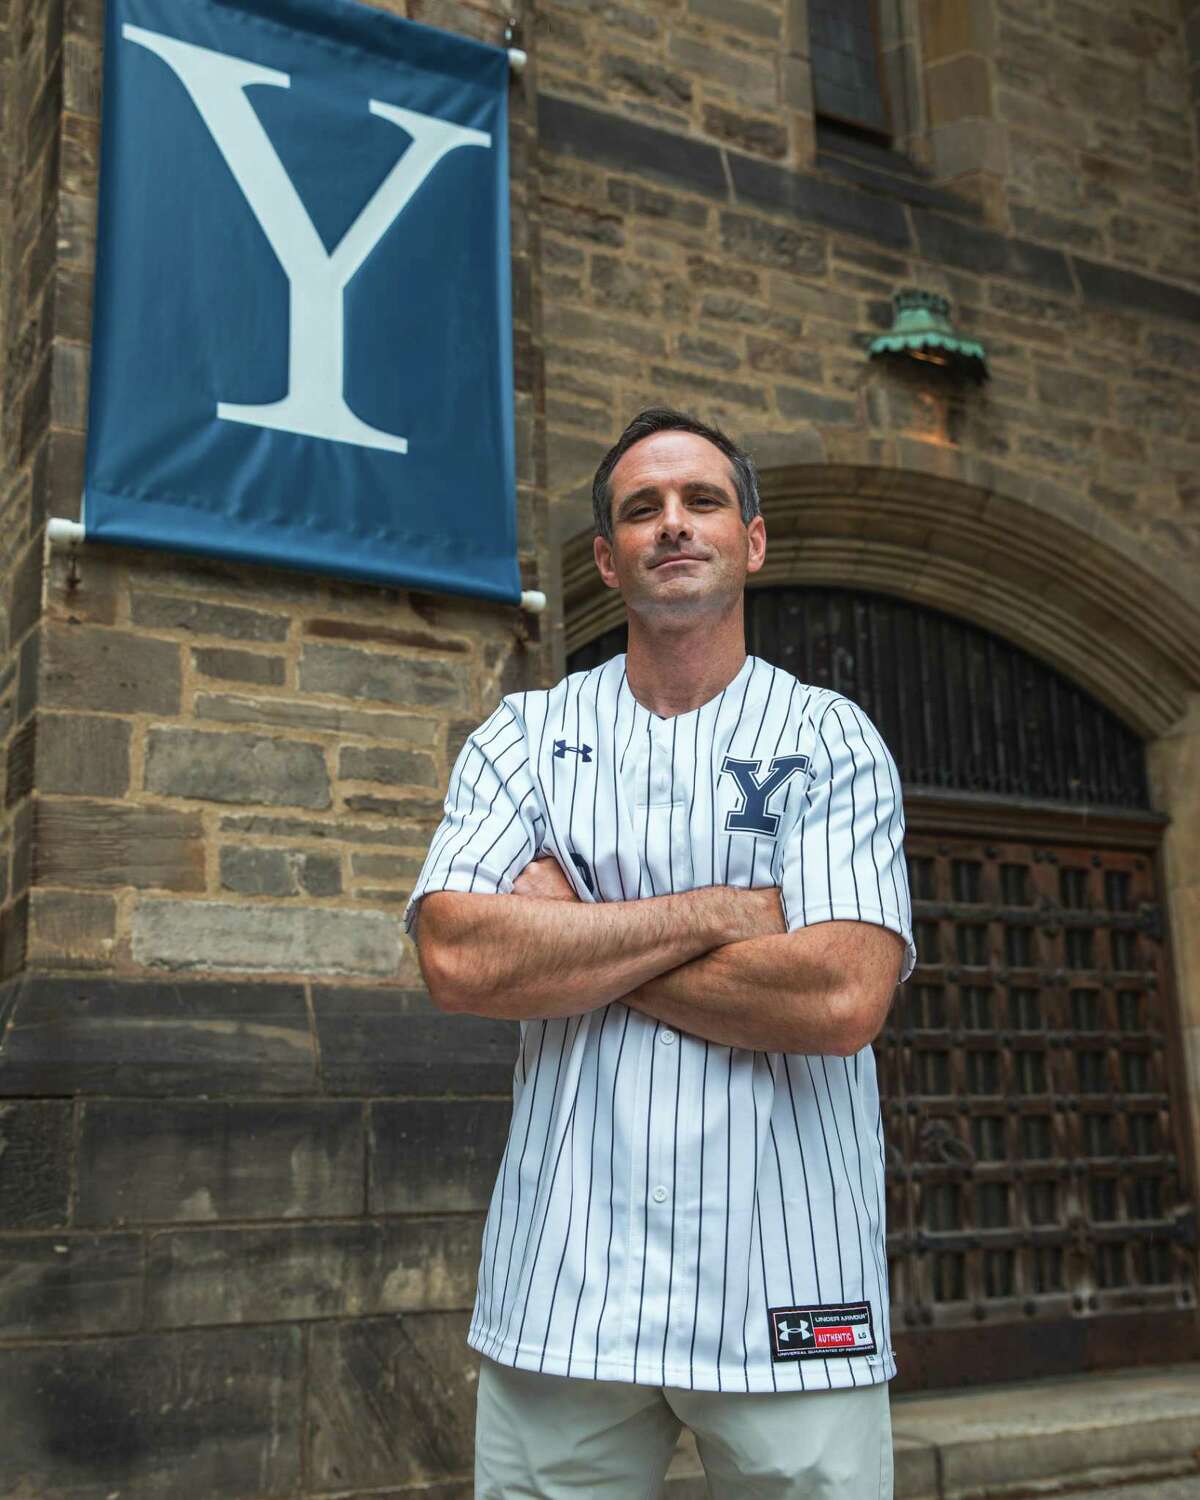 Brian Hamm has been named baseball coach at Yale.